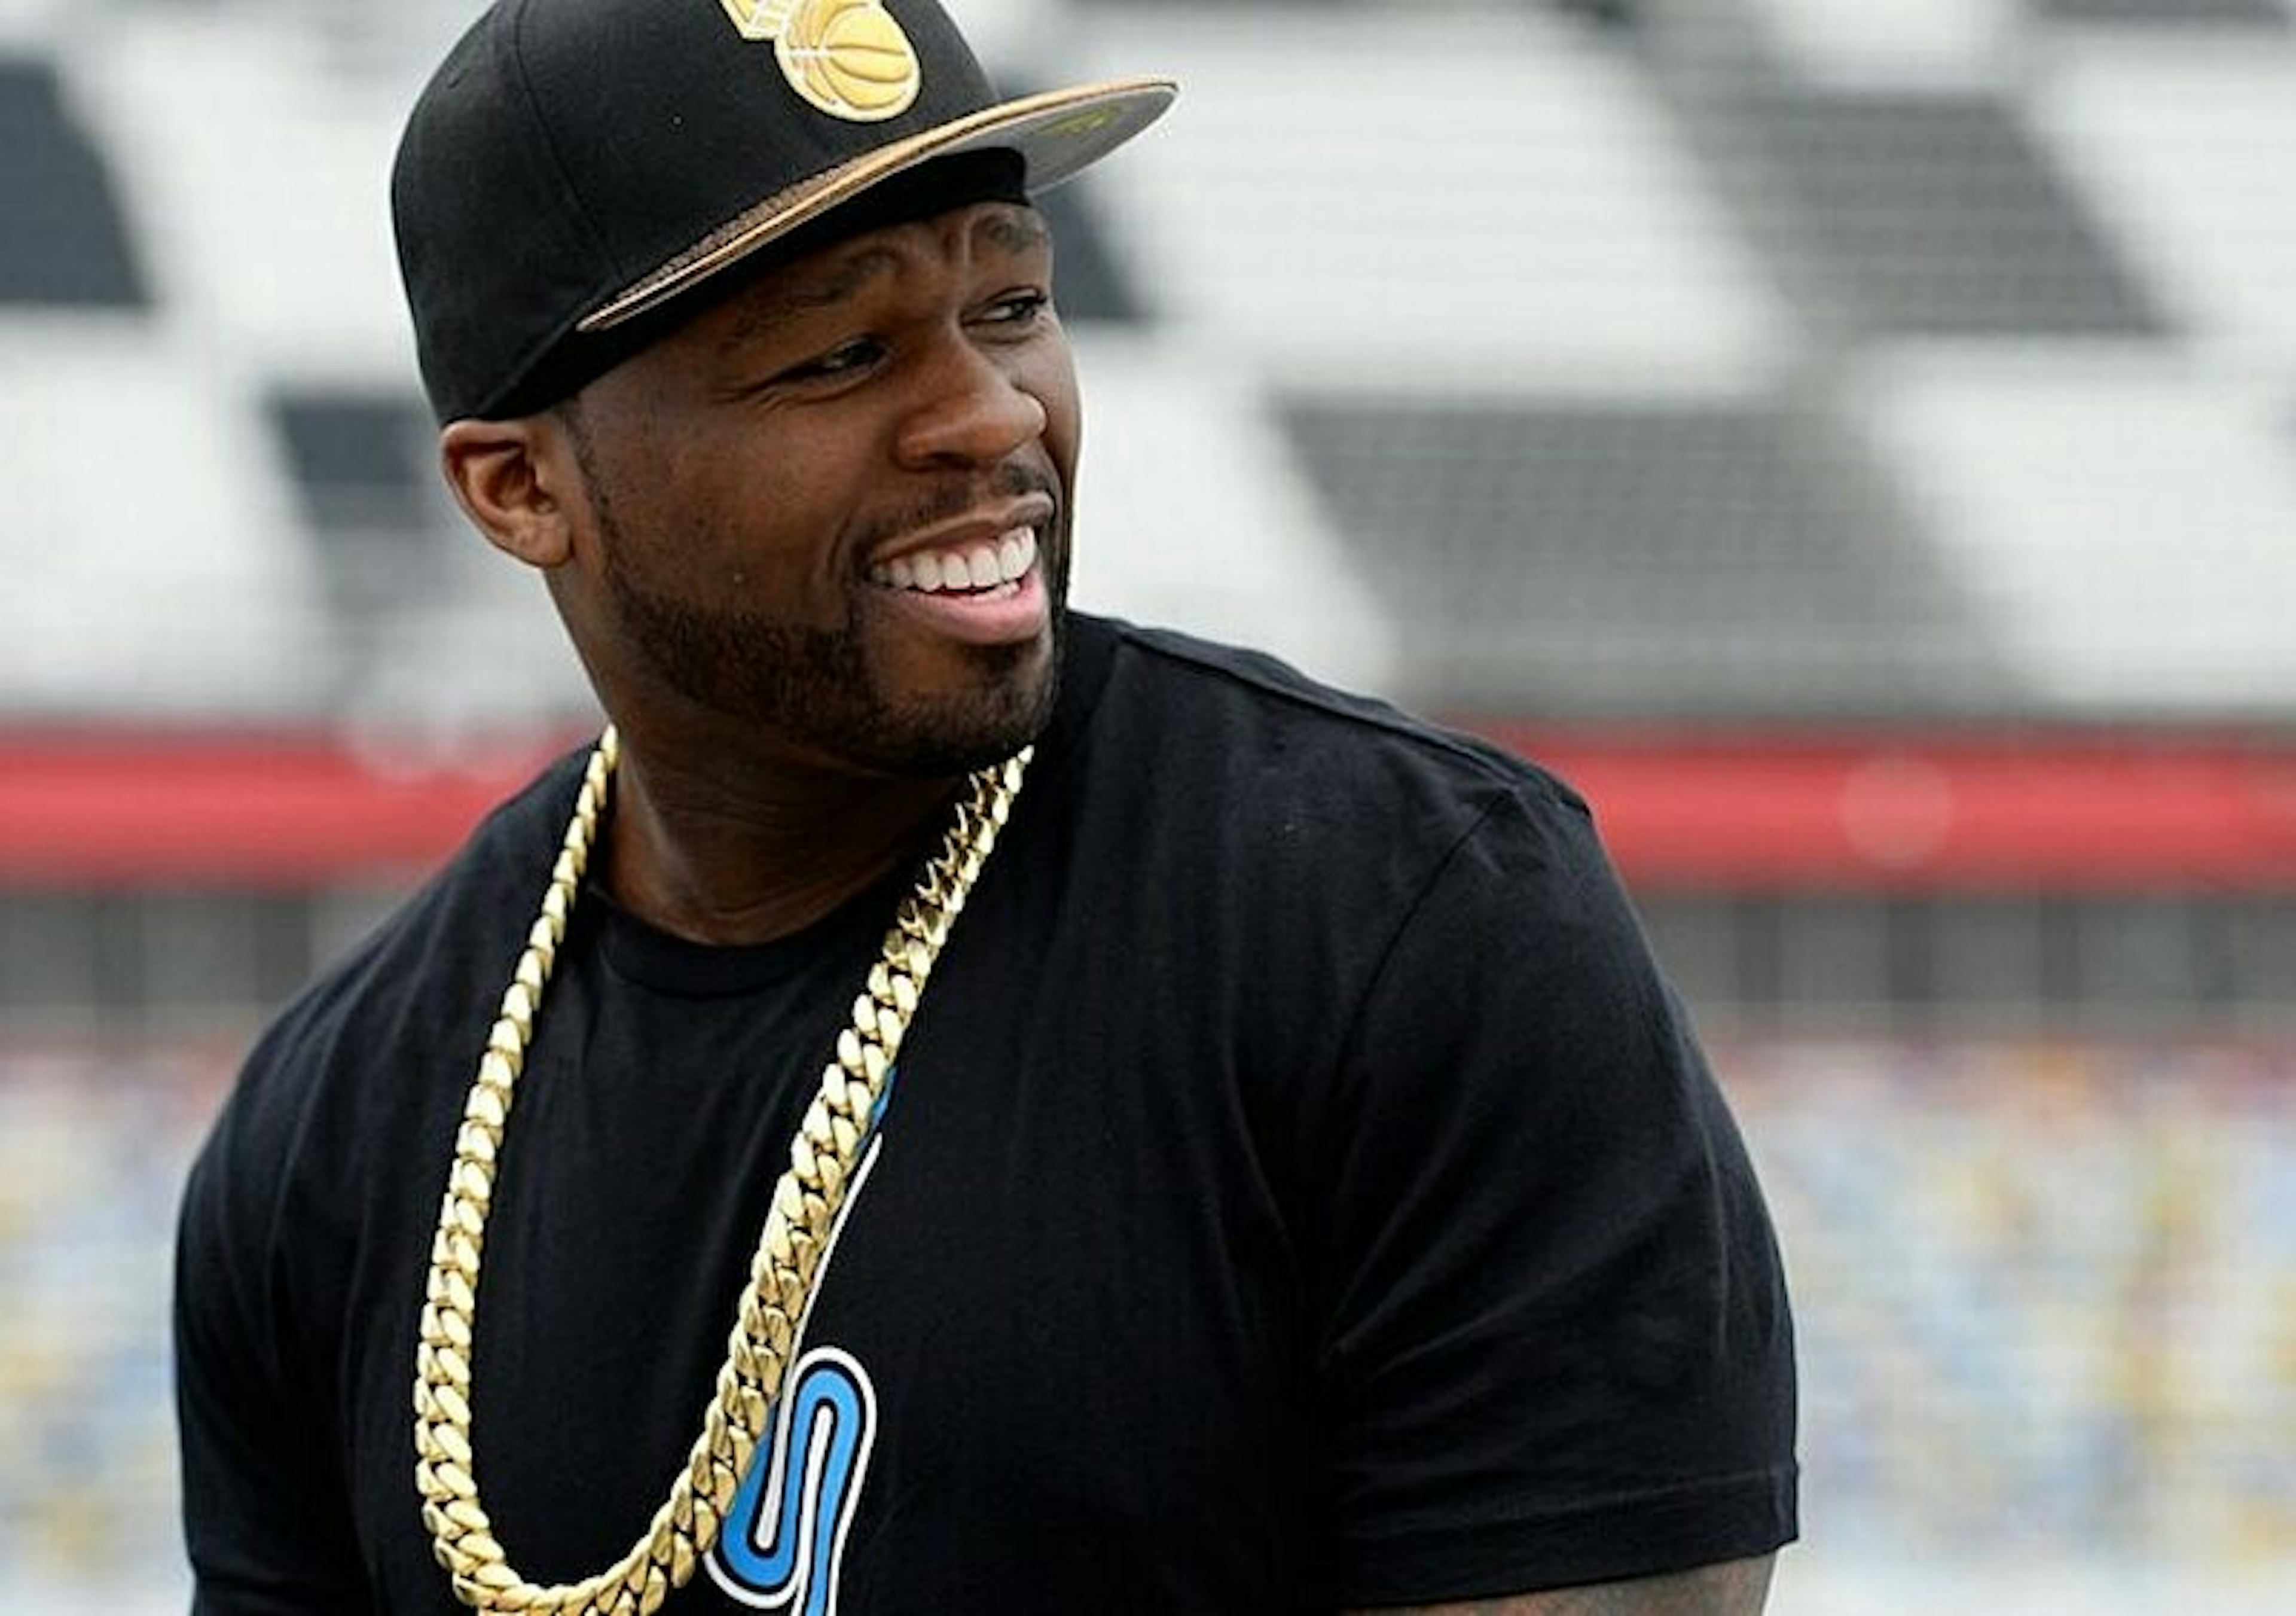 Nieznany raper starał się podbić do 50 Centa, aby zainteresować go swoim Instagramem. Nie pykło